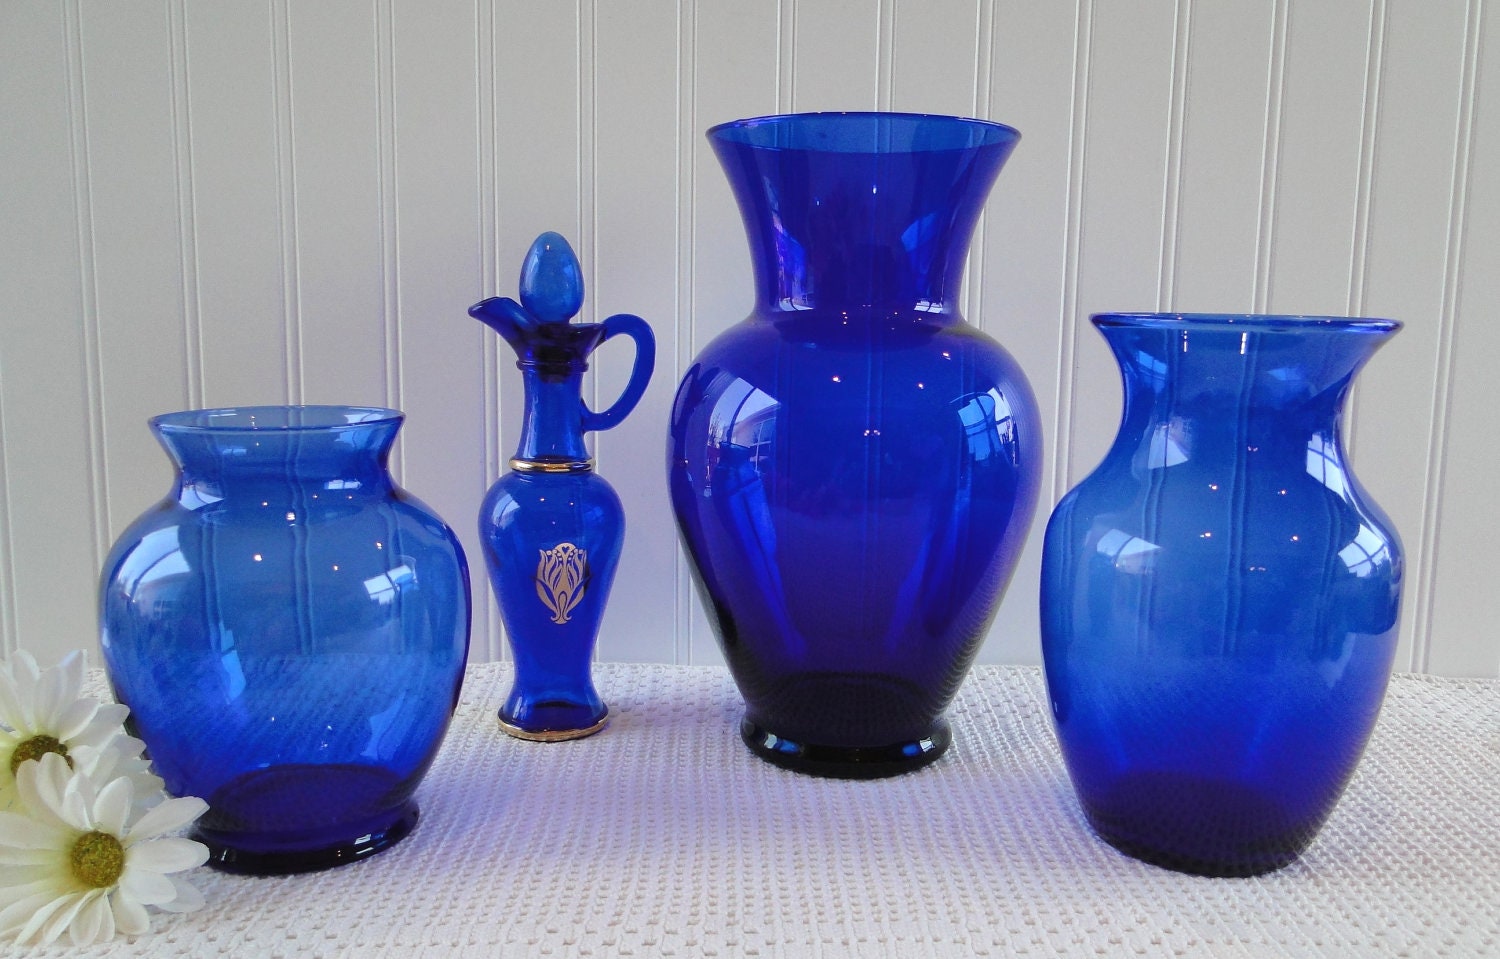 cobalt blue glass vase